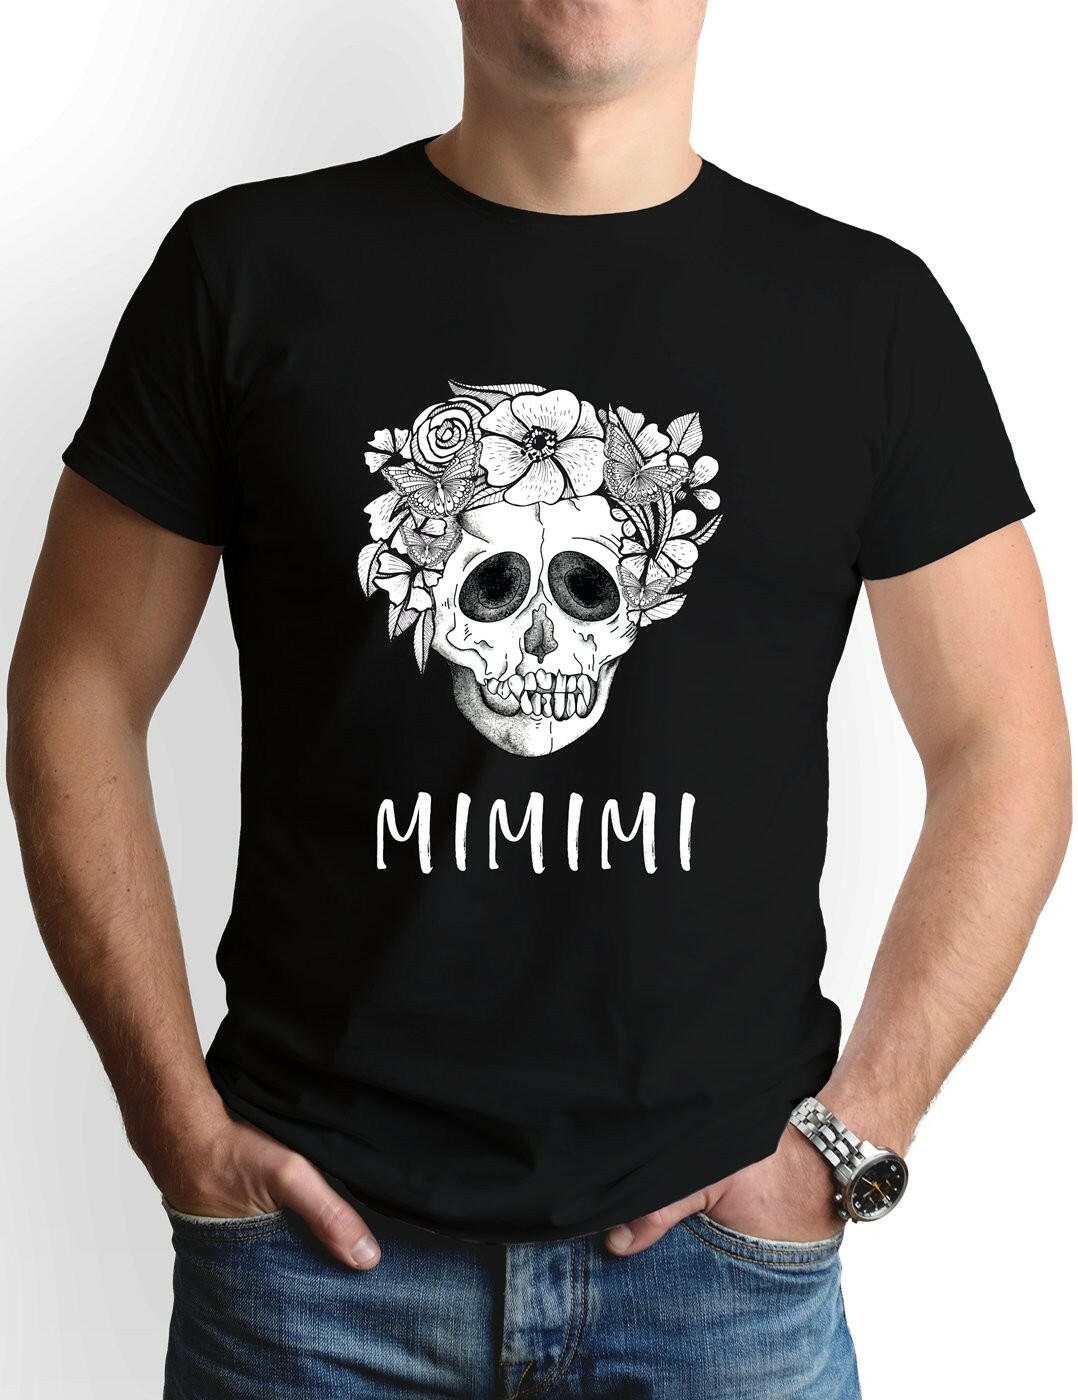 Bild: T-Shirt Herren - Mimimi - Totenkopf Geschenkidee